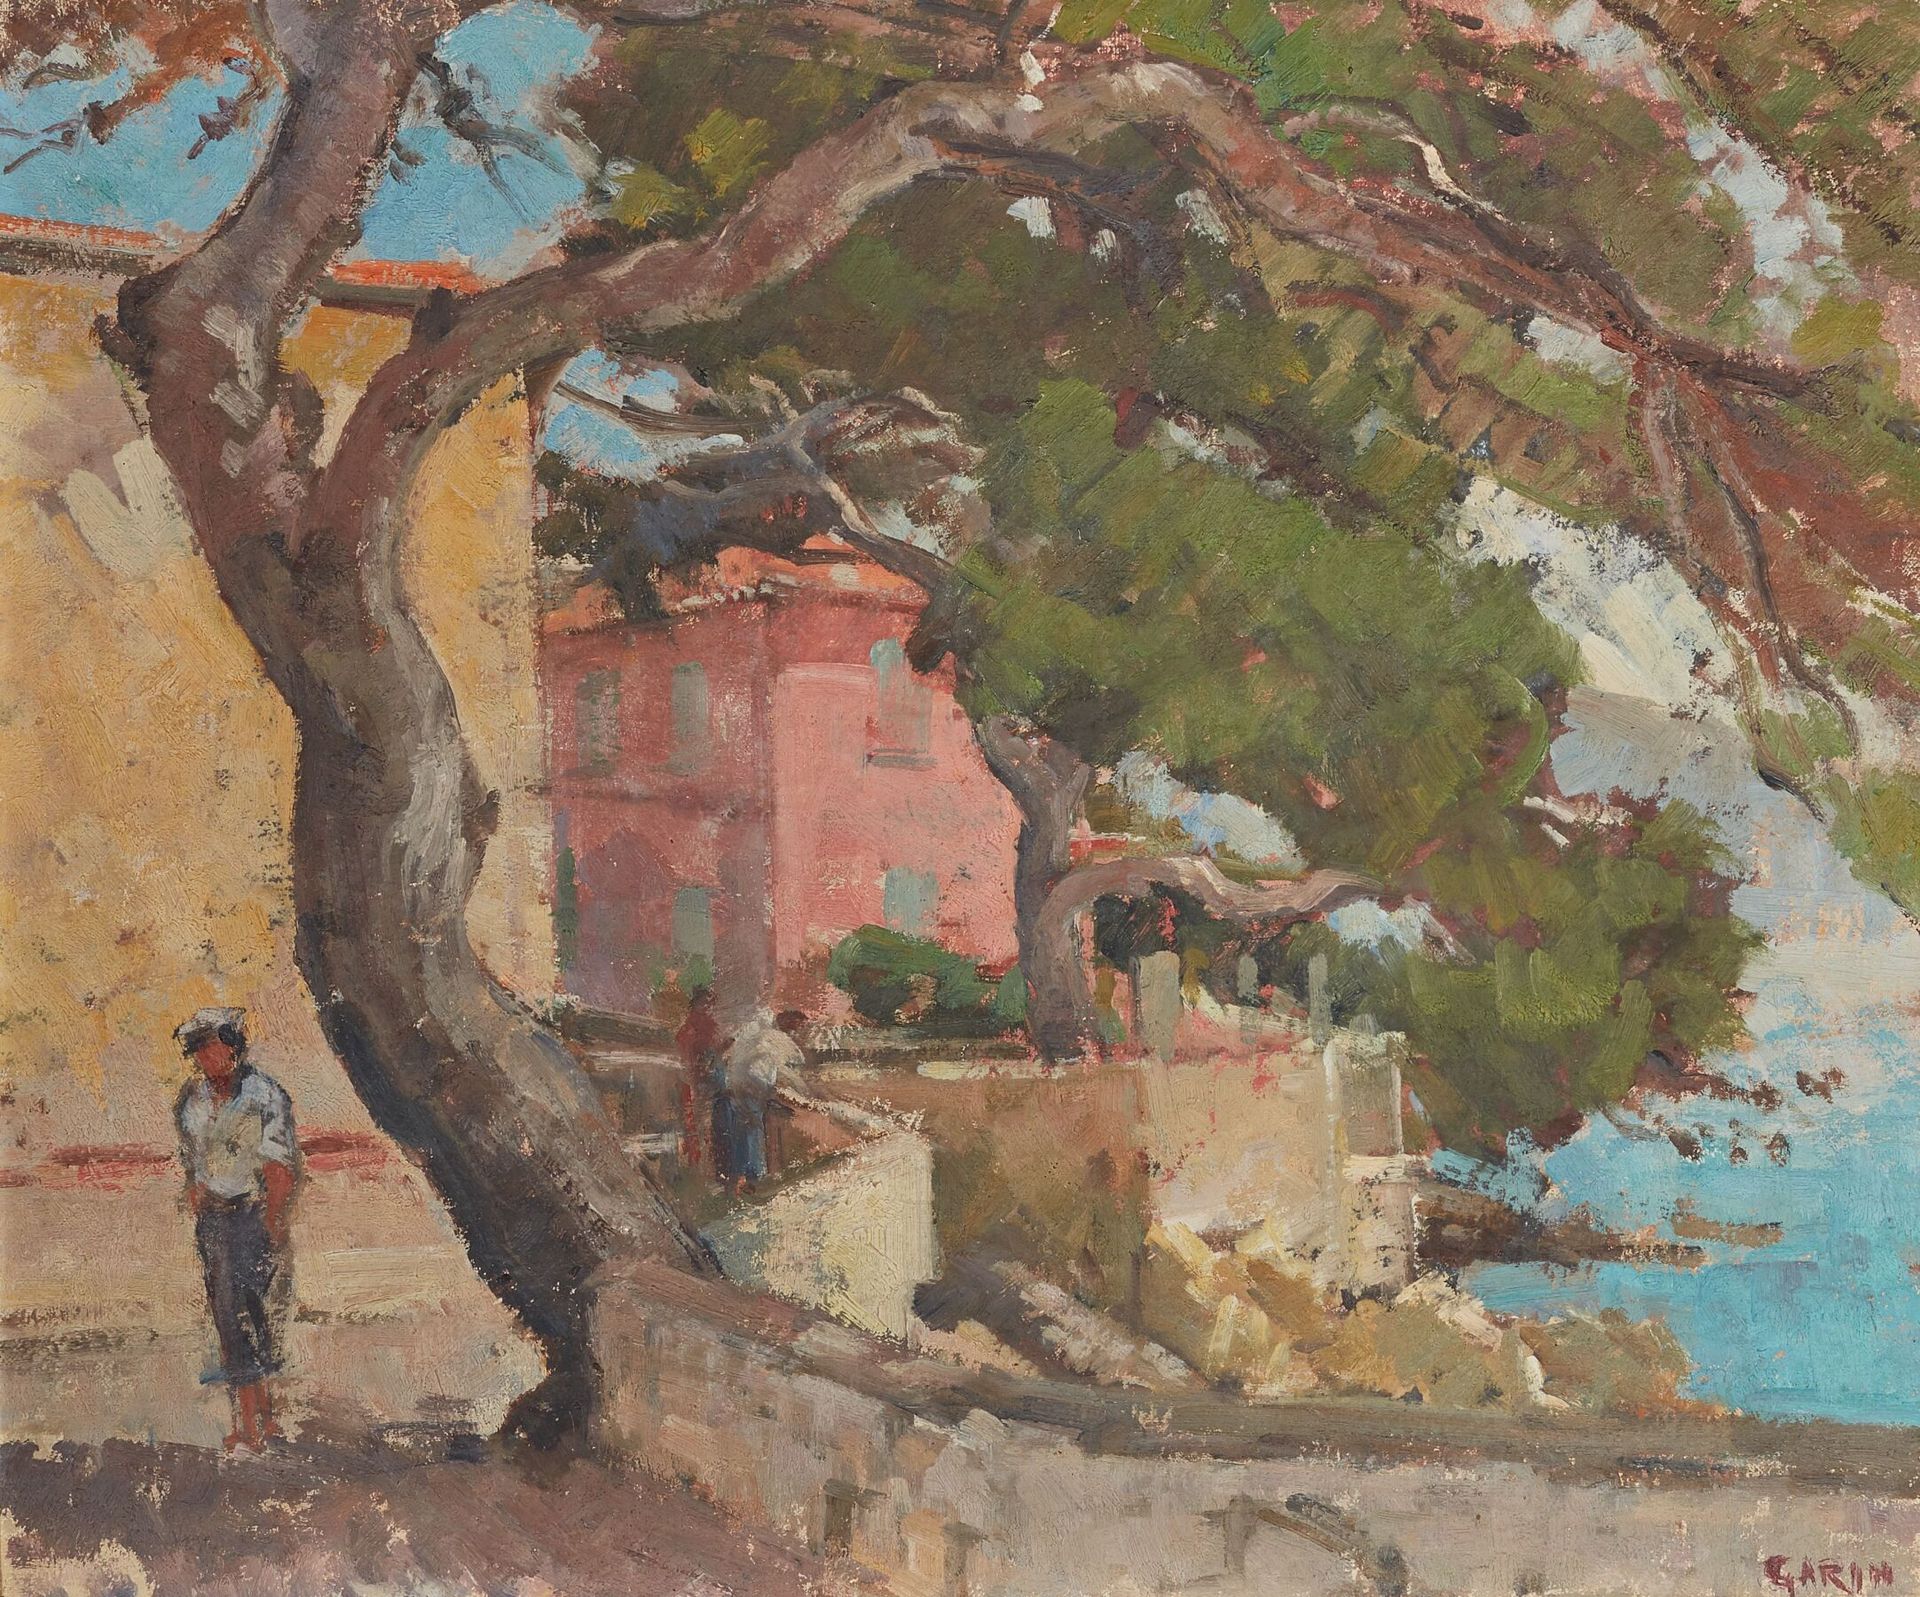 Null Paul GARIN (Künstler aus Nizza, 1898-1963).
Die Corniche in Beaulieu.
Öl au&hellip;